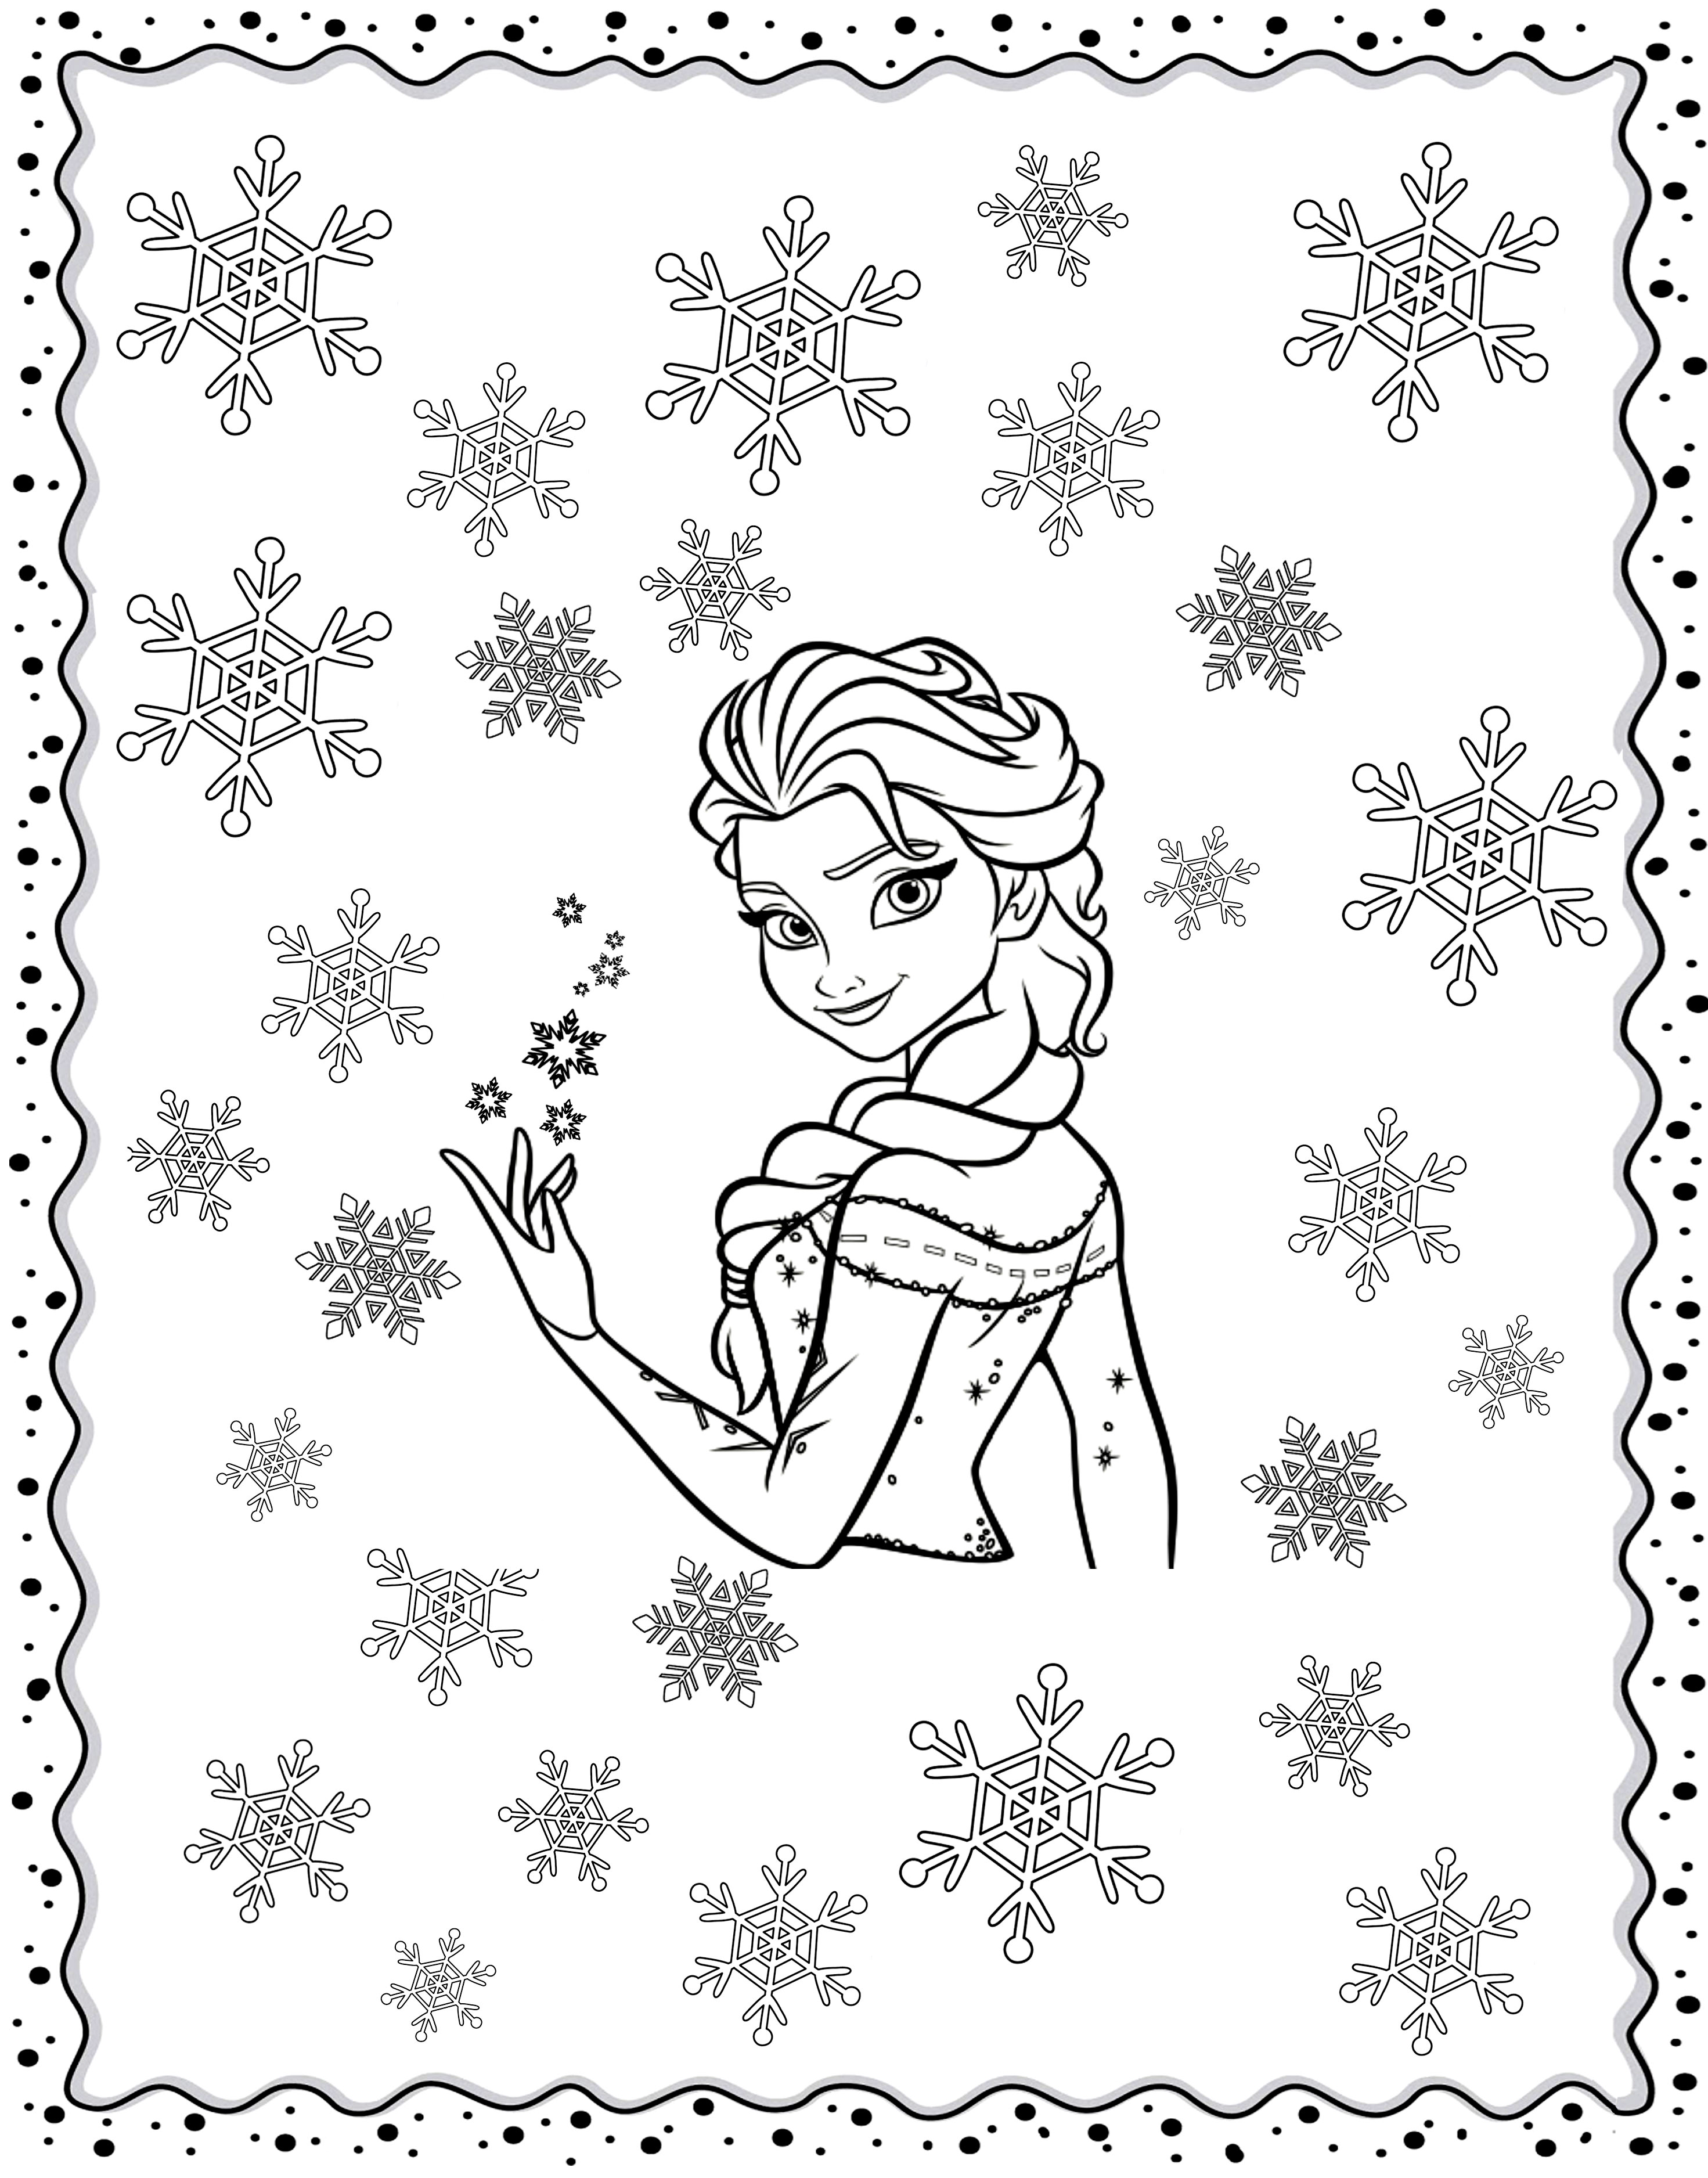 Original-Farbgebung inspiriert von Frozen, mit Elsa inmitten von Winterflocken